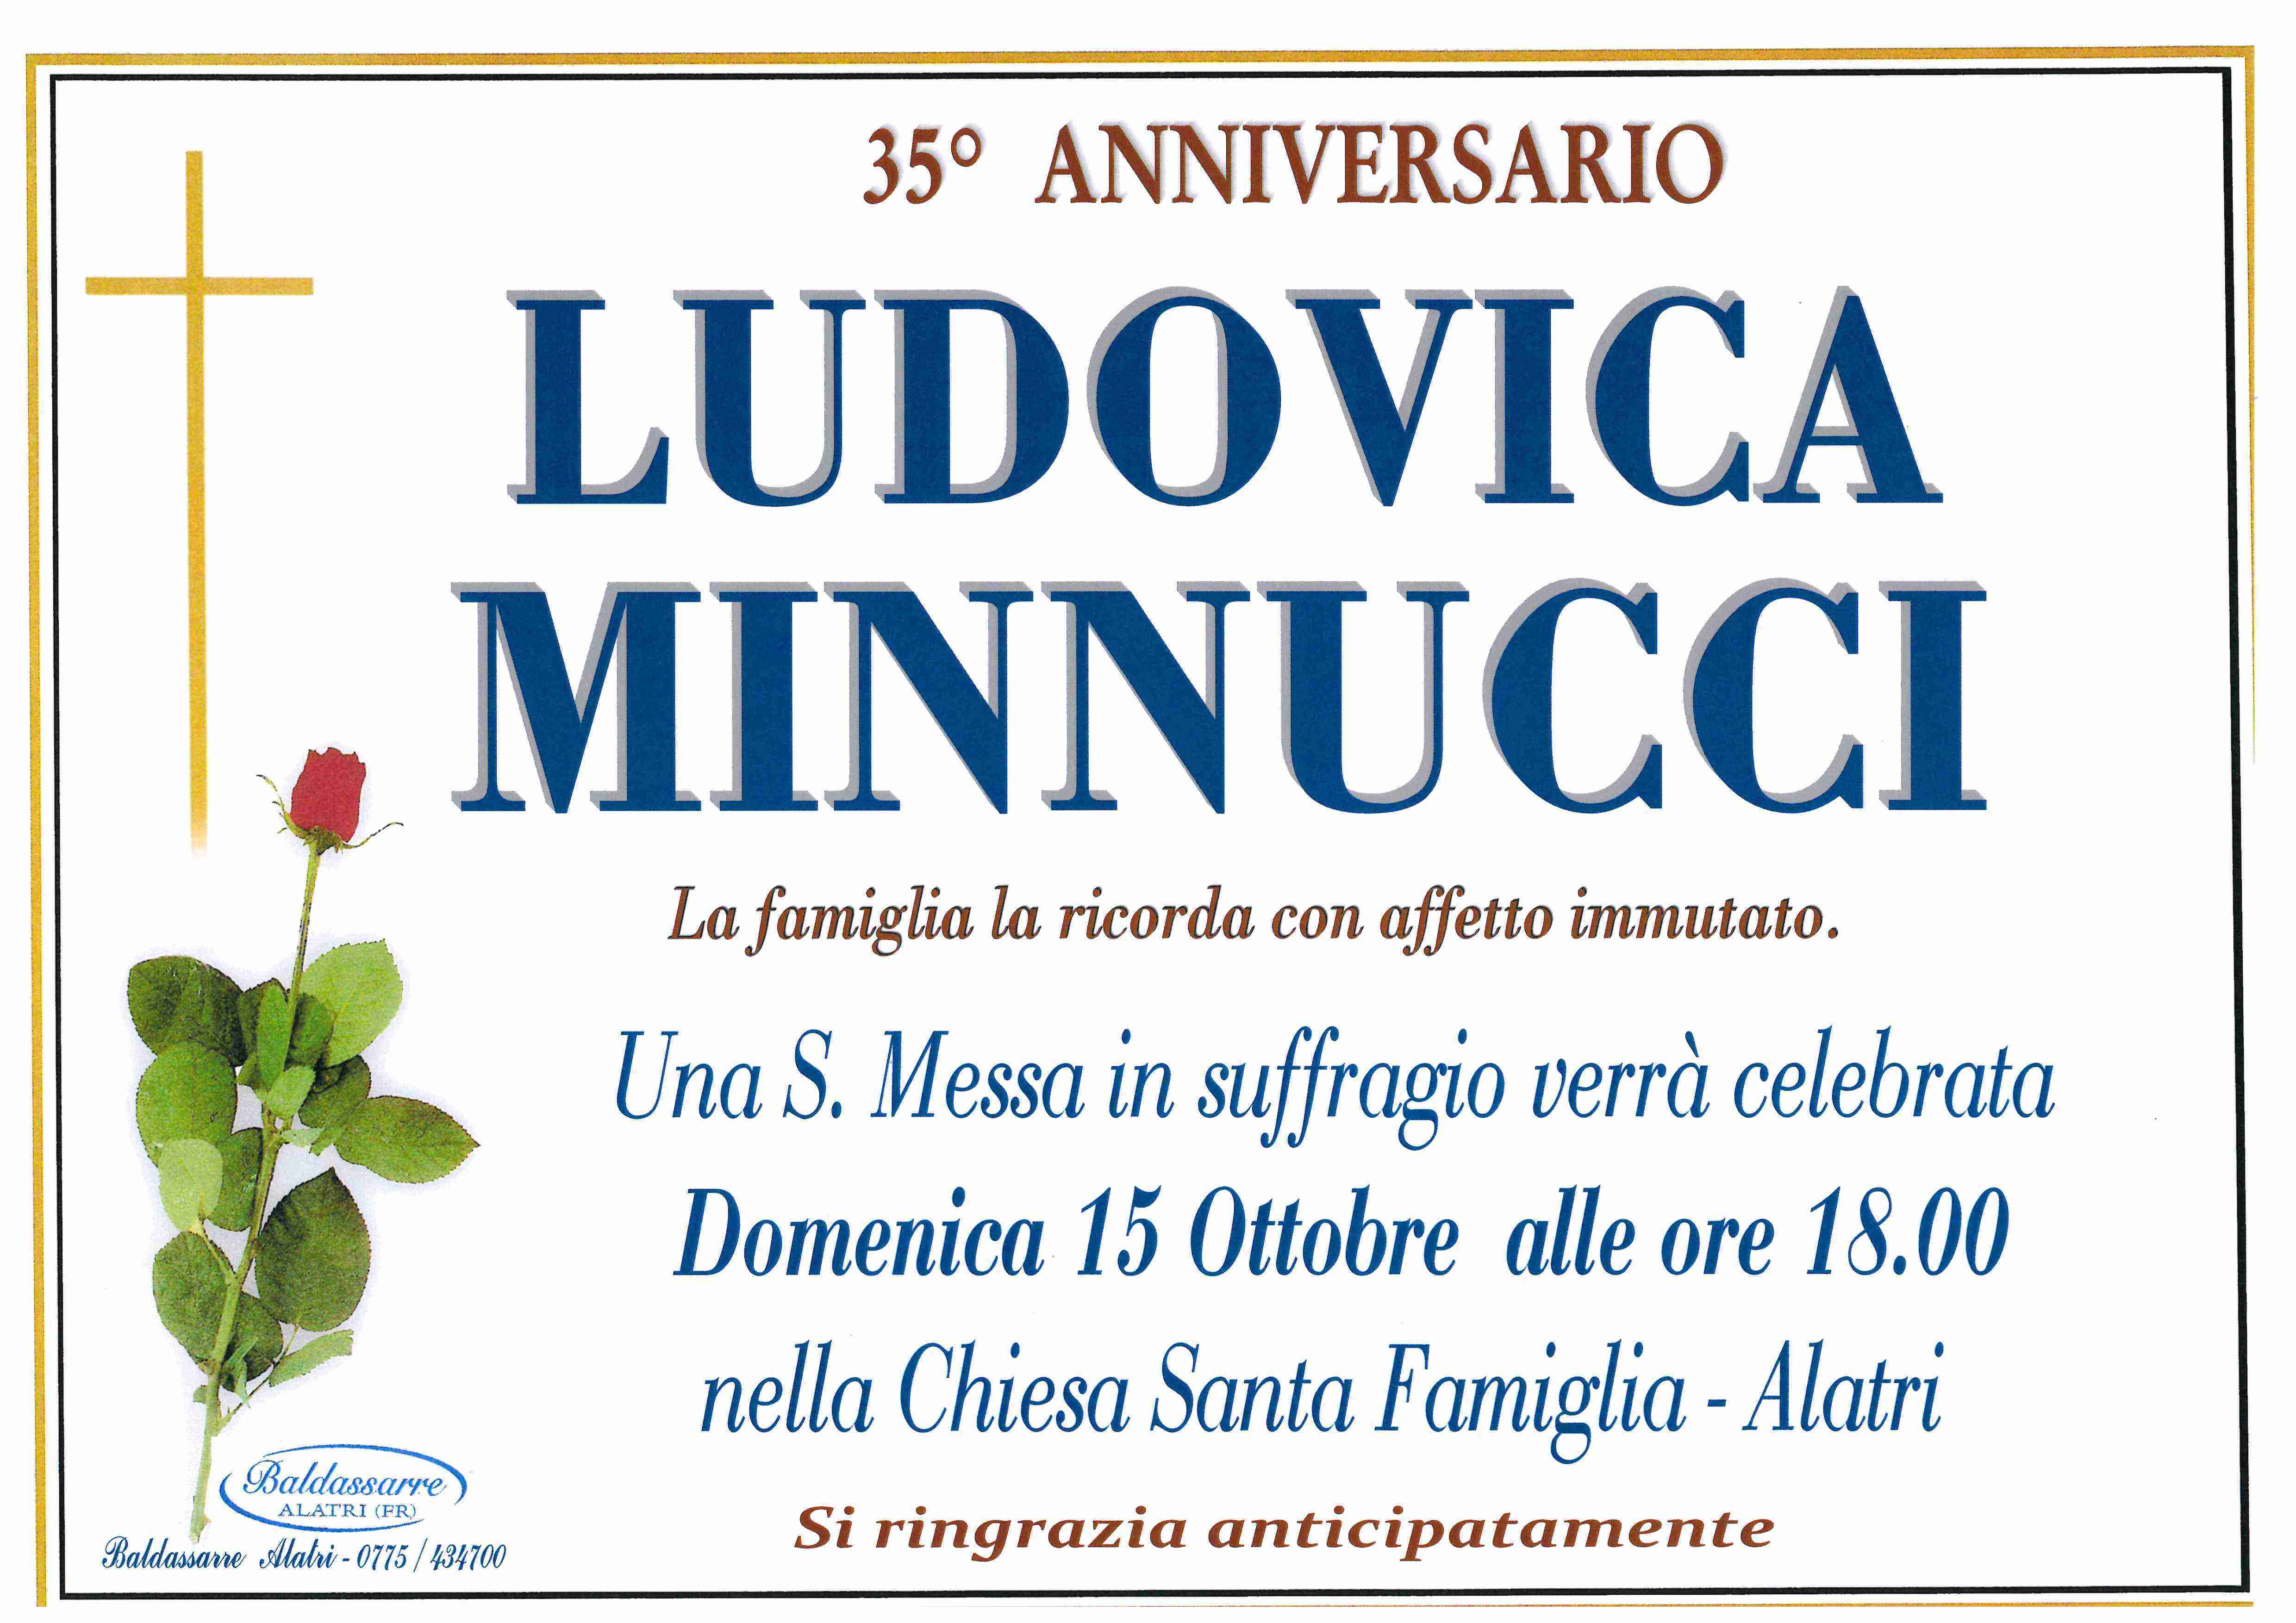 Ludovica Minncucci